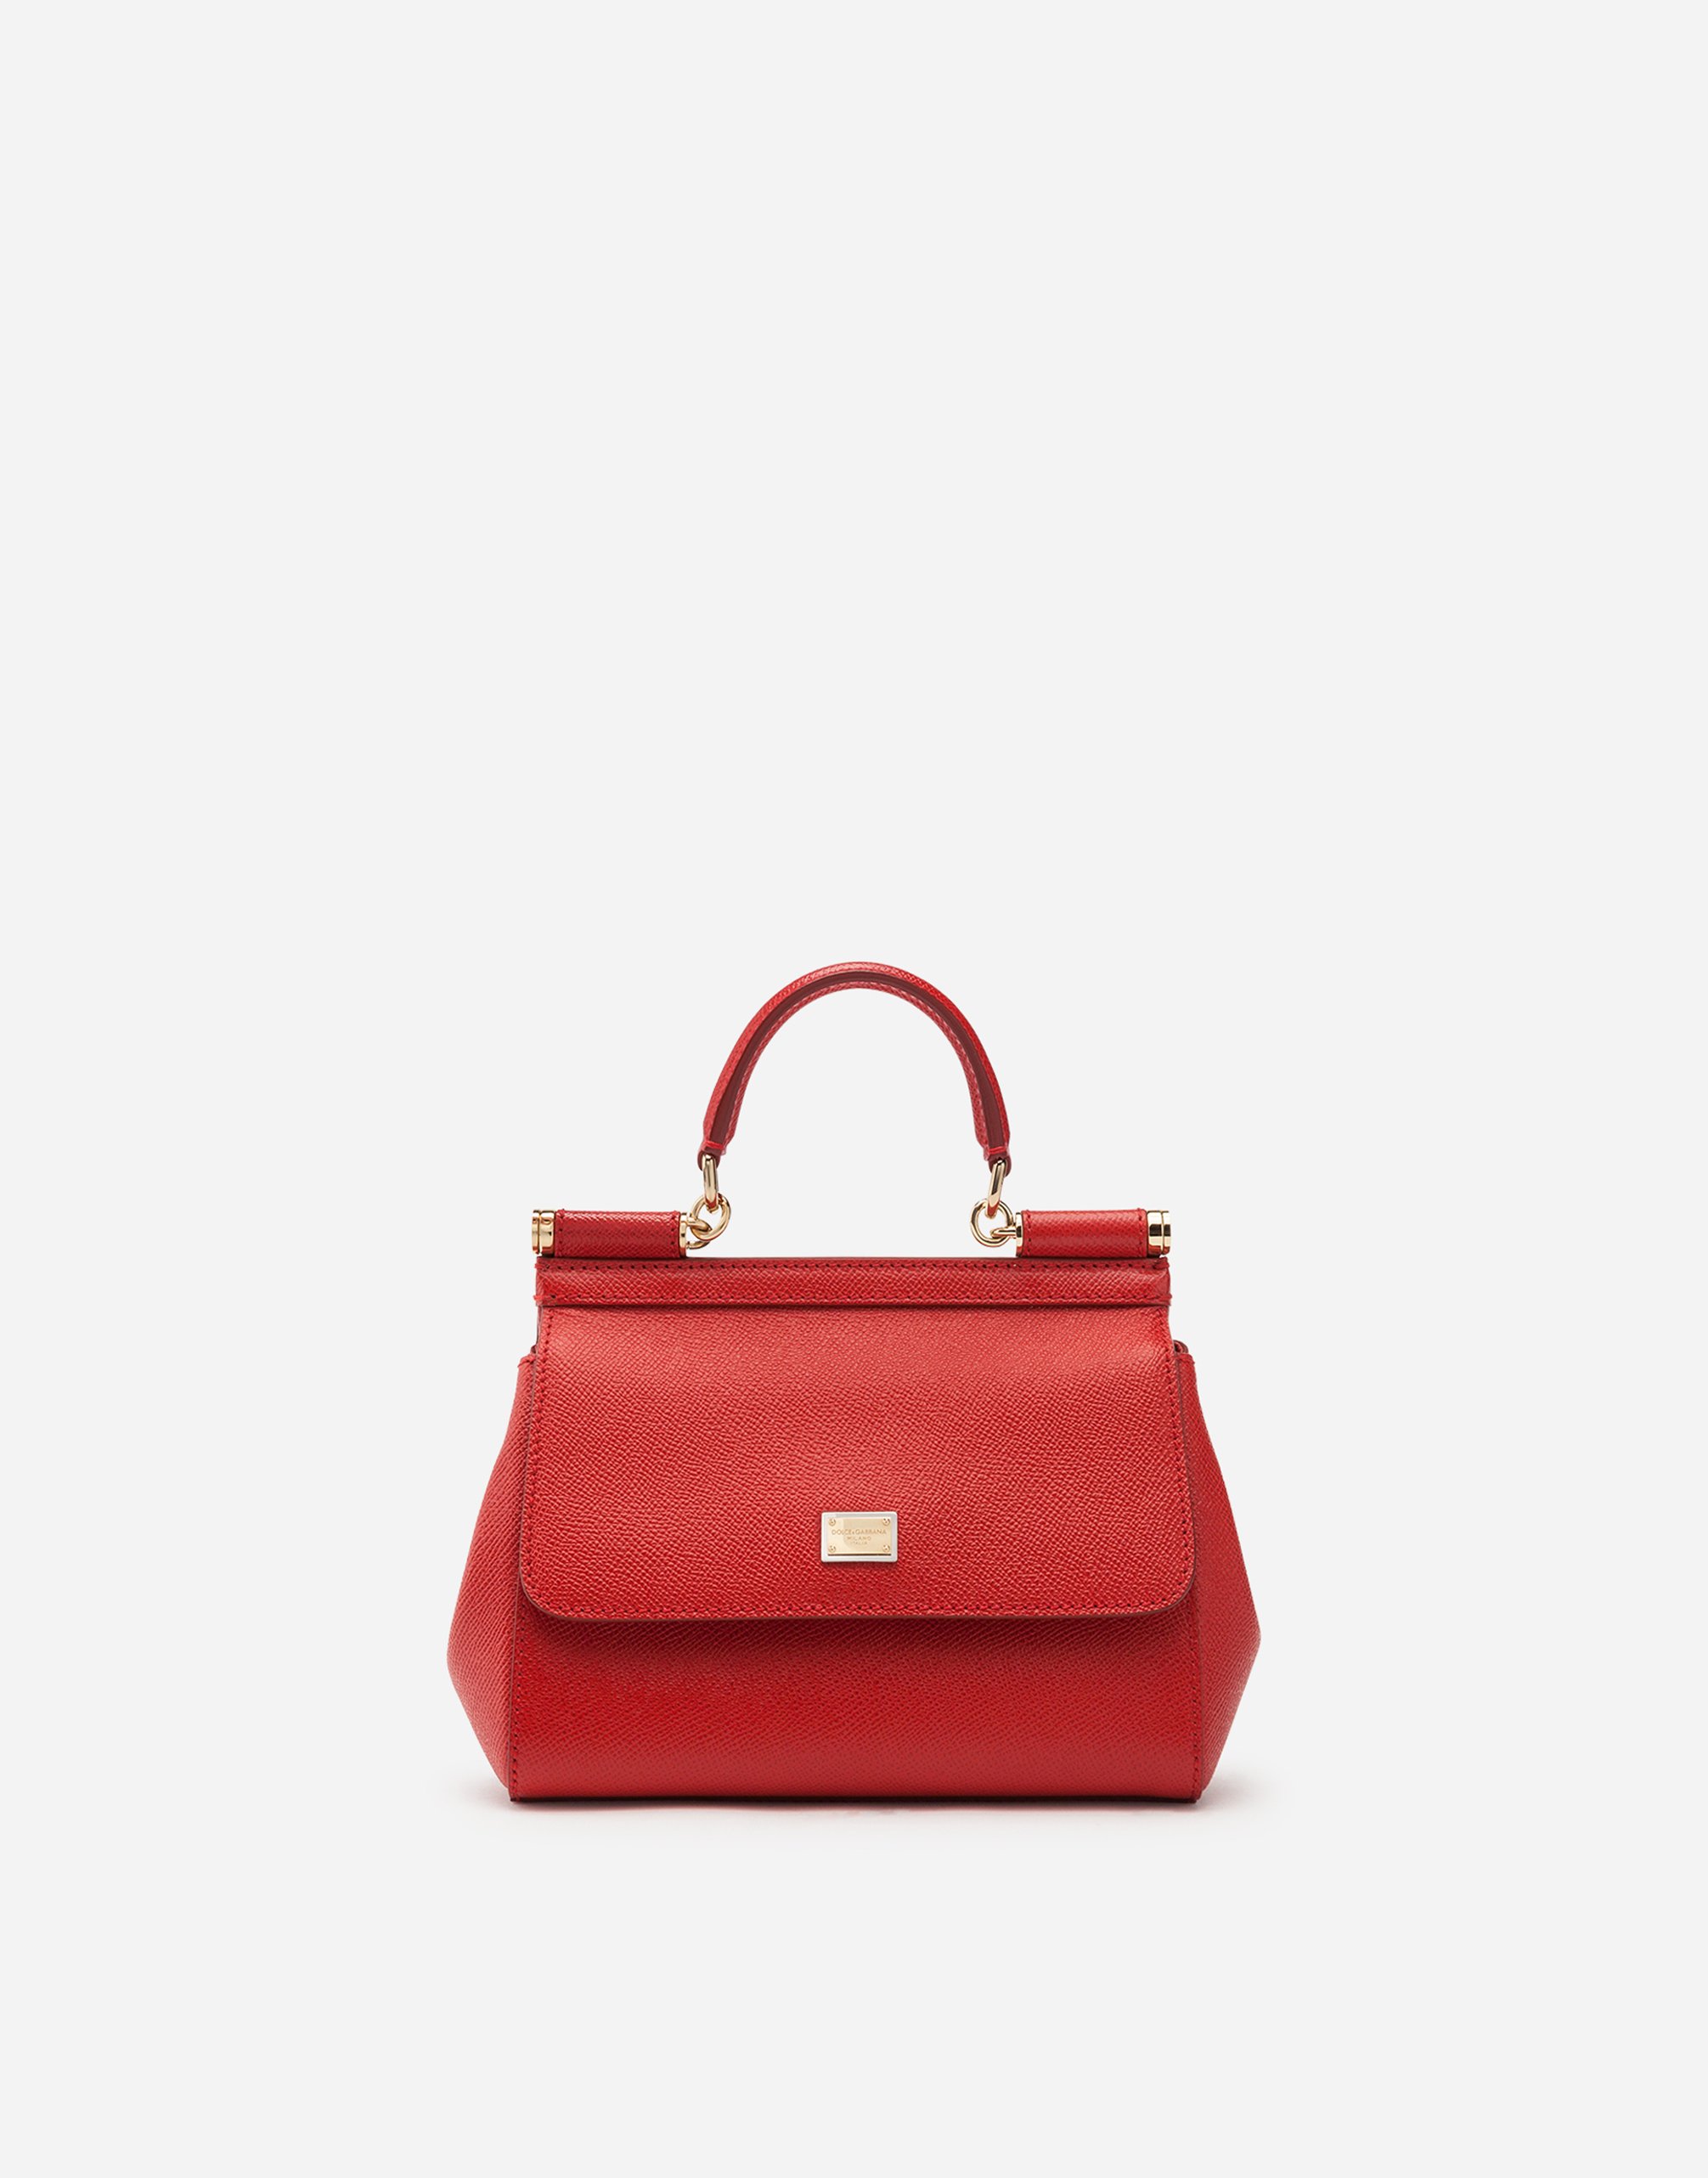 Medium Sicily handbag in Red